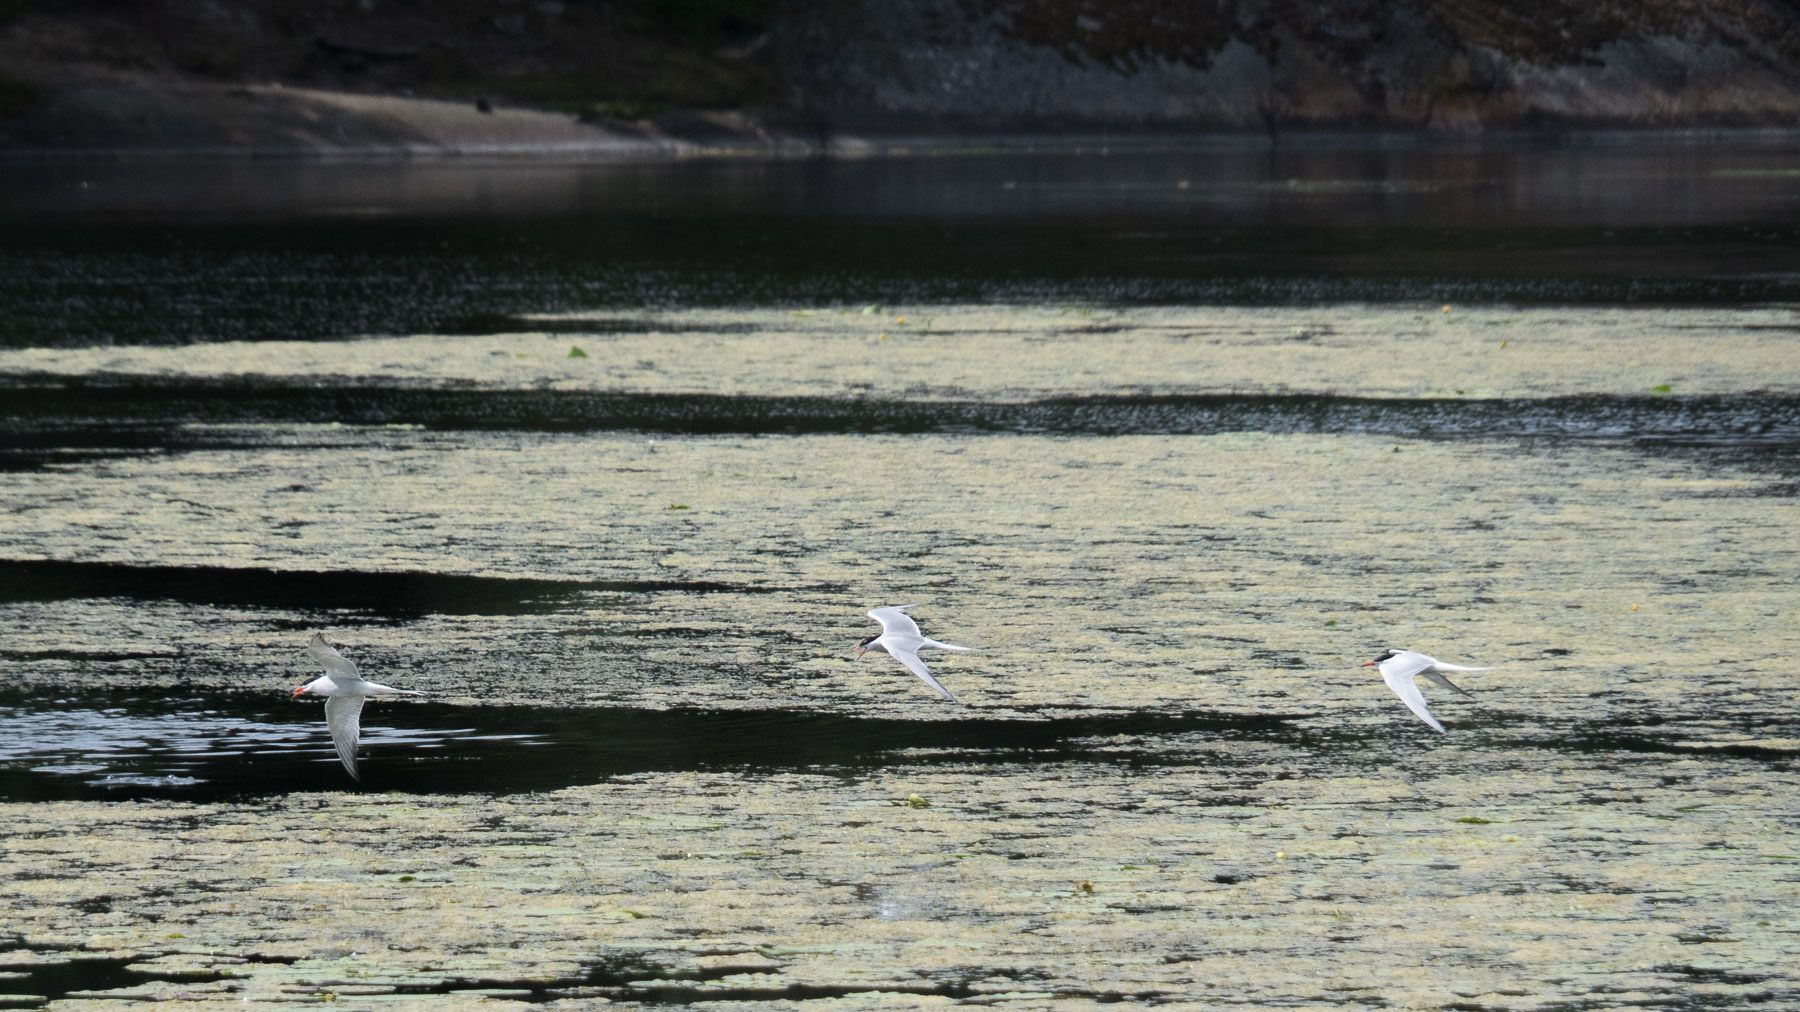 Речная крачка (Sterna hirundo) встречается в южной части Швеции. Перелётная птица, гнездится как у пресноводных водоёмов, так и около моря. Озеро Magelungen, Стокгольм, июнь 2016 года. Автор фото: Сутормина Марина